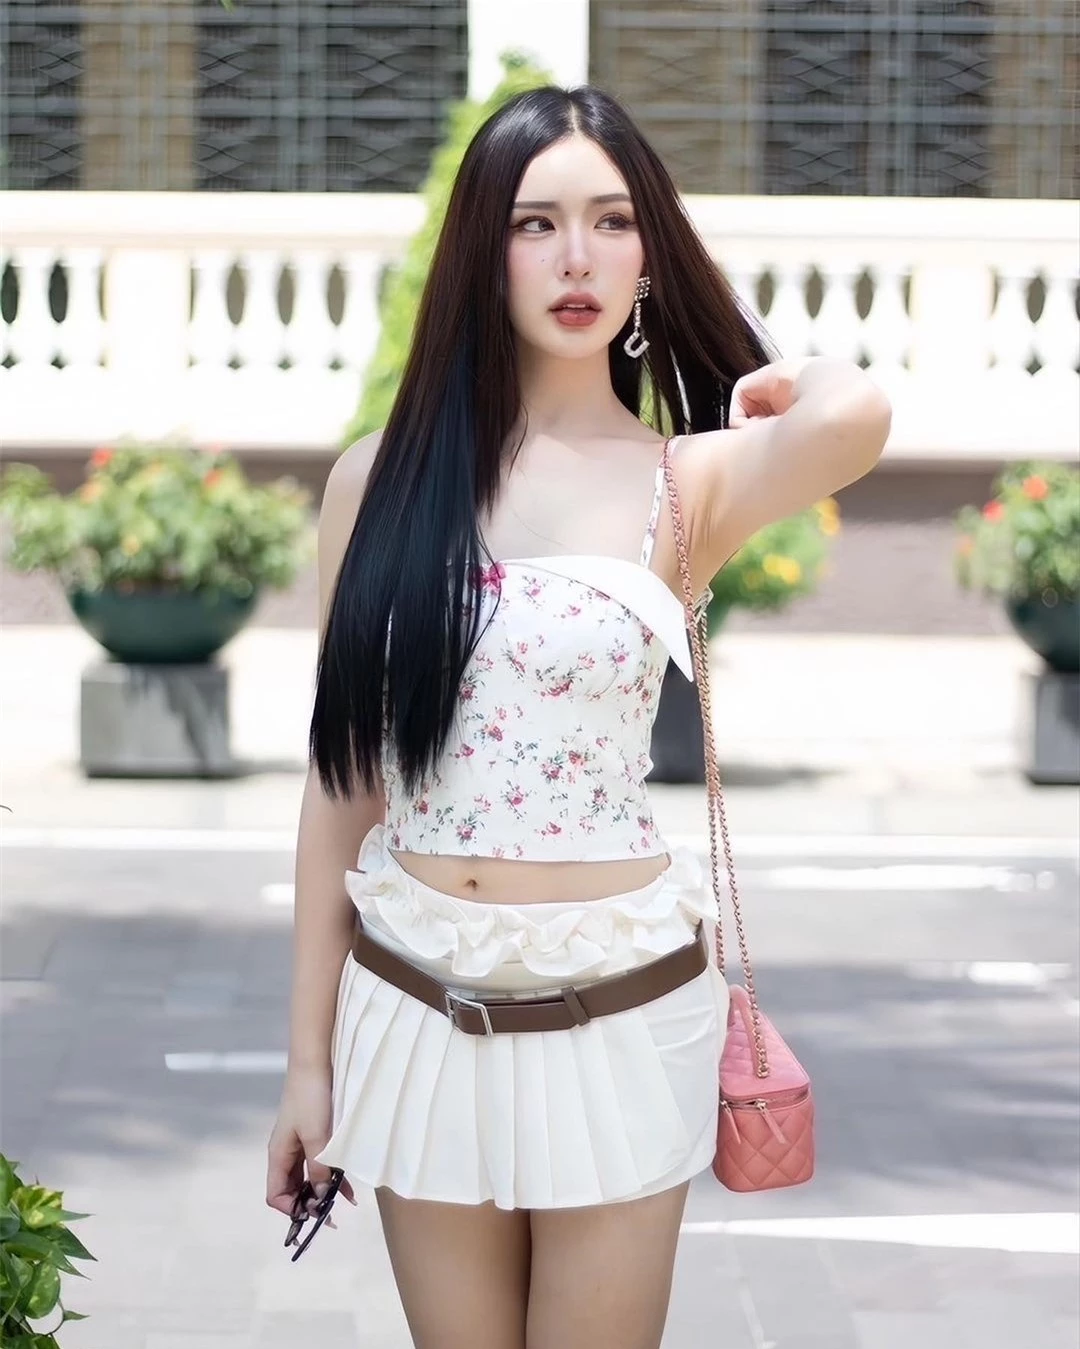 Nhan sắc nóng bỏng của người đẹp lai đăng quang Hoa hậu Hòa bình Phuket ảnh 23